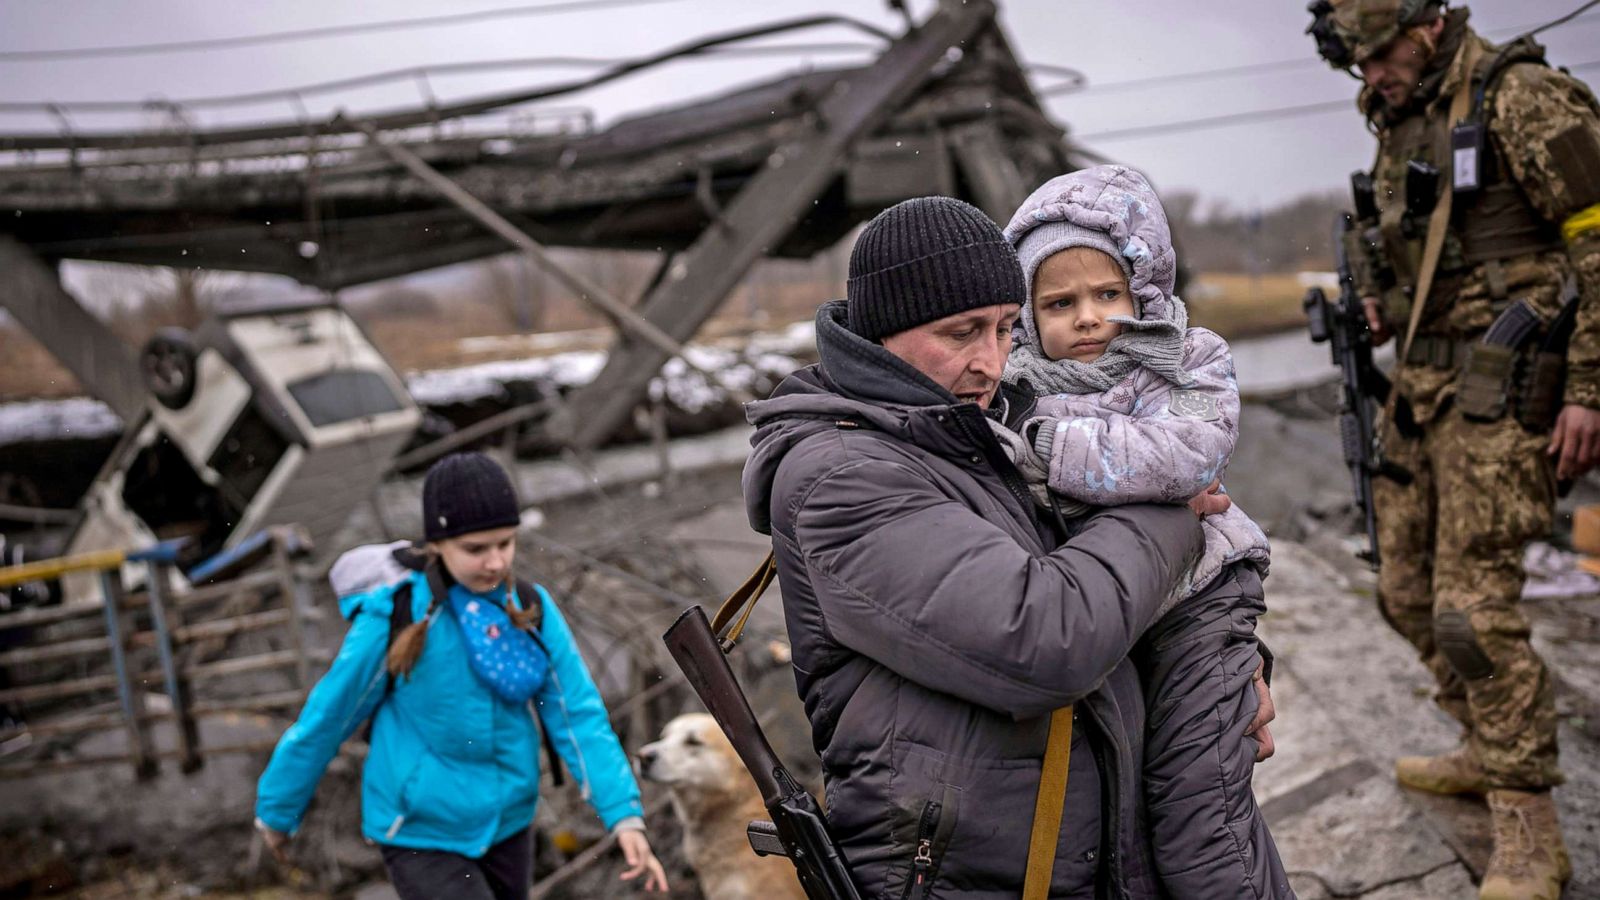 Українська поліція запустила чат-бот для пошуку загублених дітей